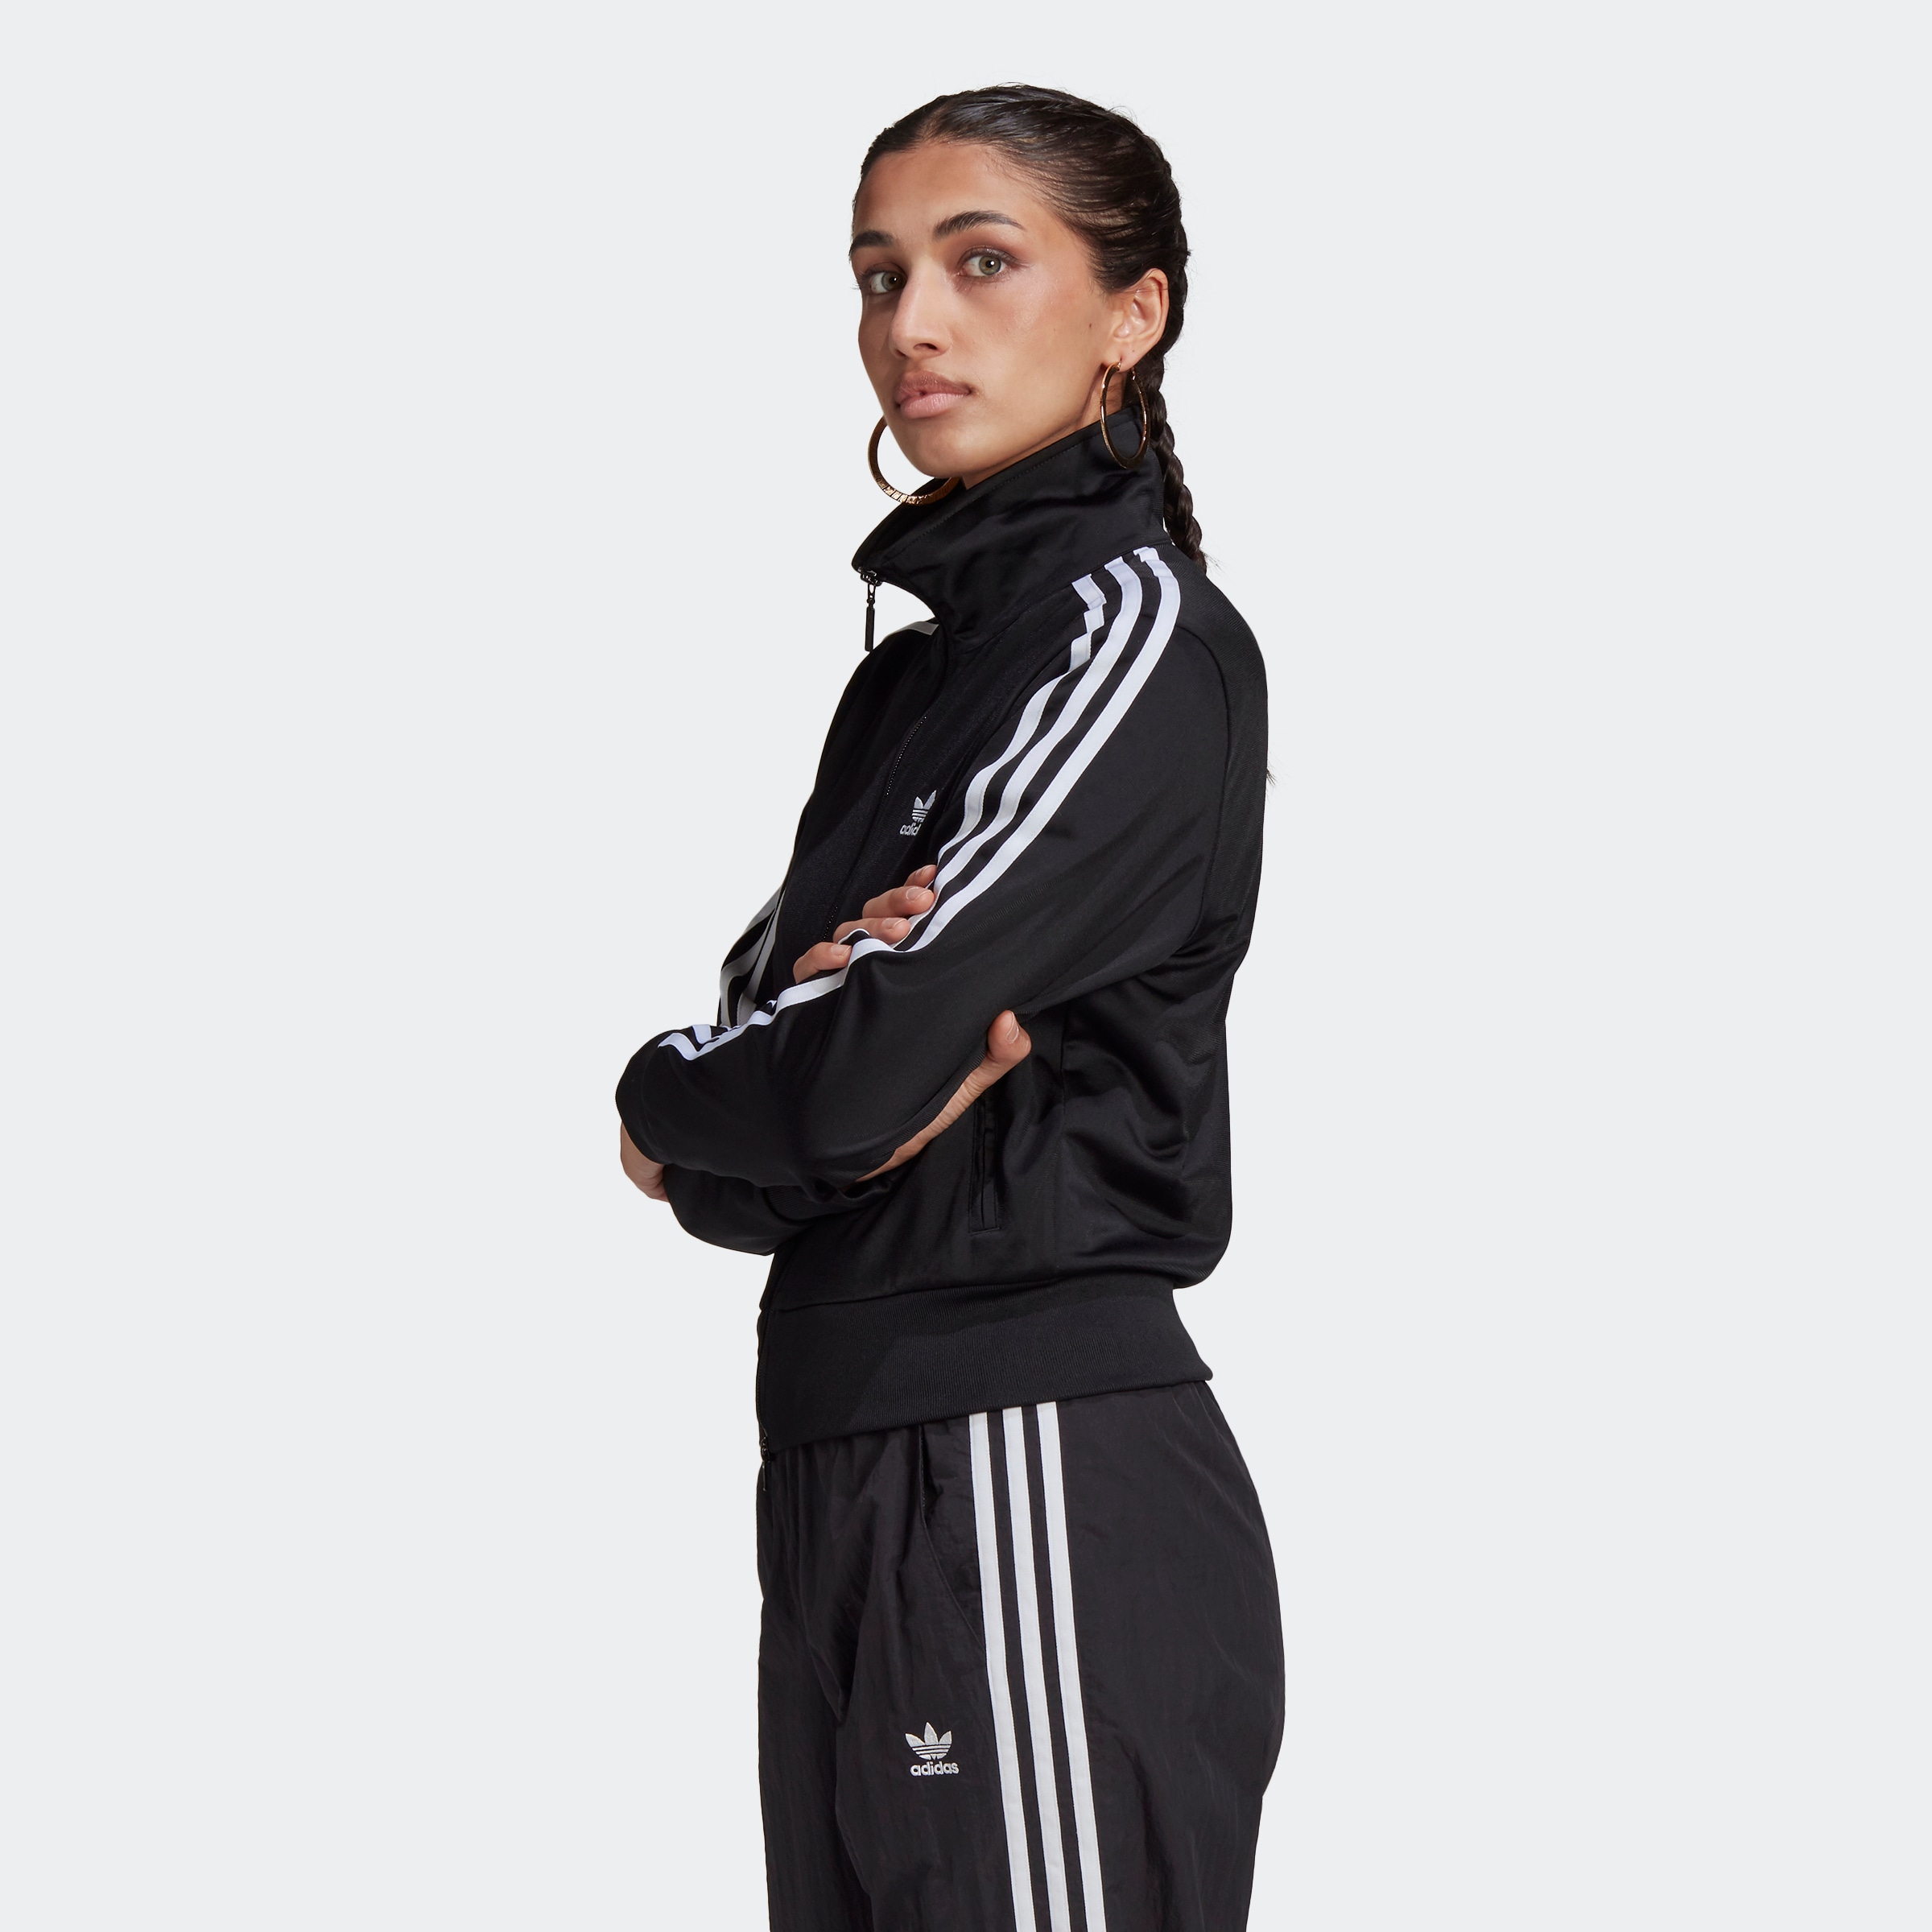 Entdecke adidas Originals »ADICOLOR CLASSICS ORIGINALS« FIREBIRD Trainingsjacke auf